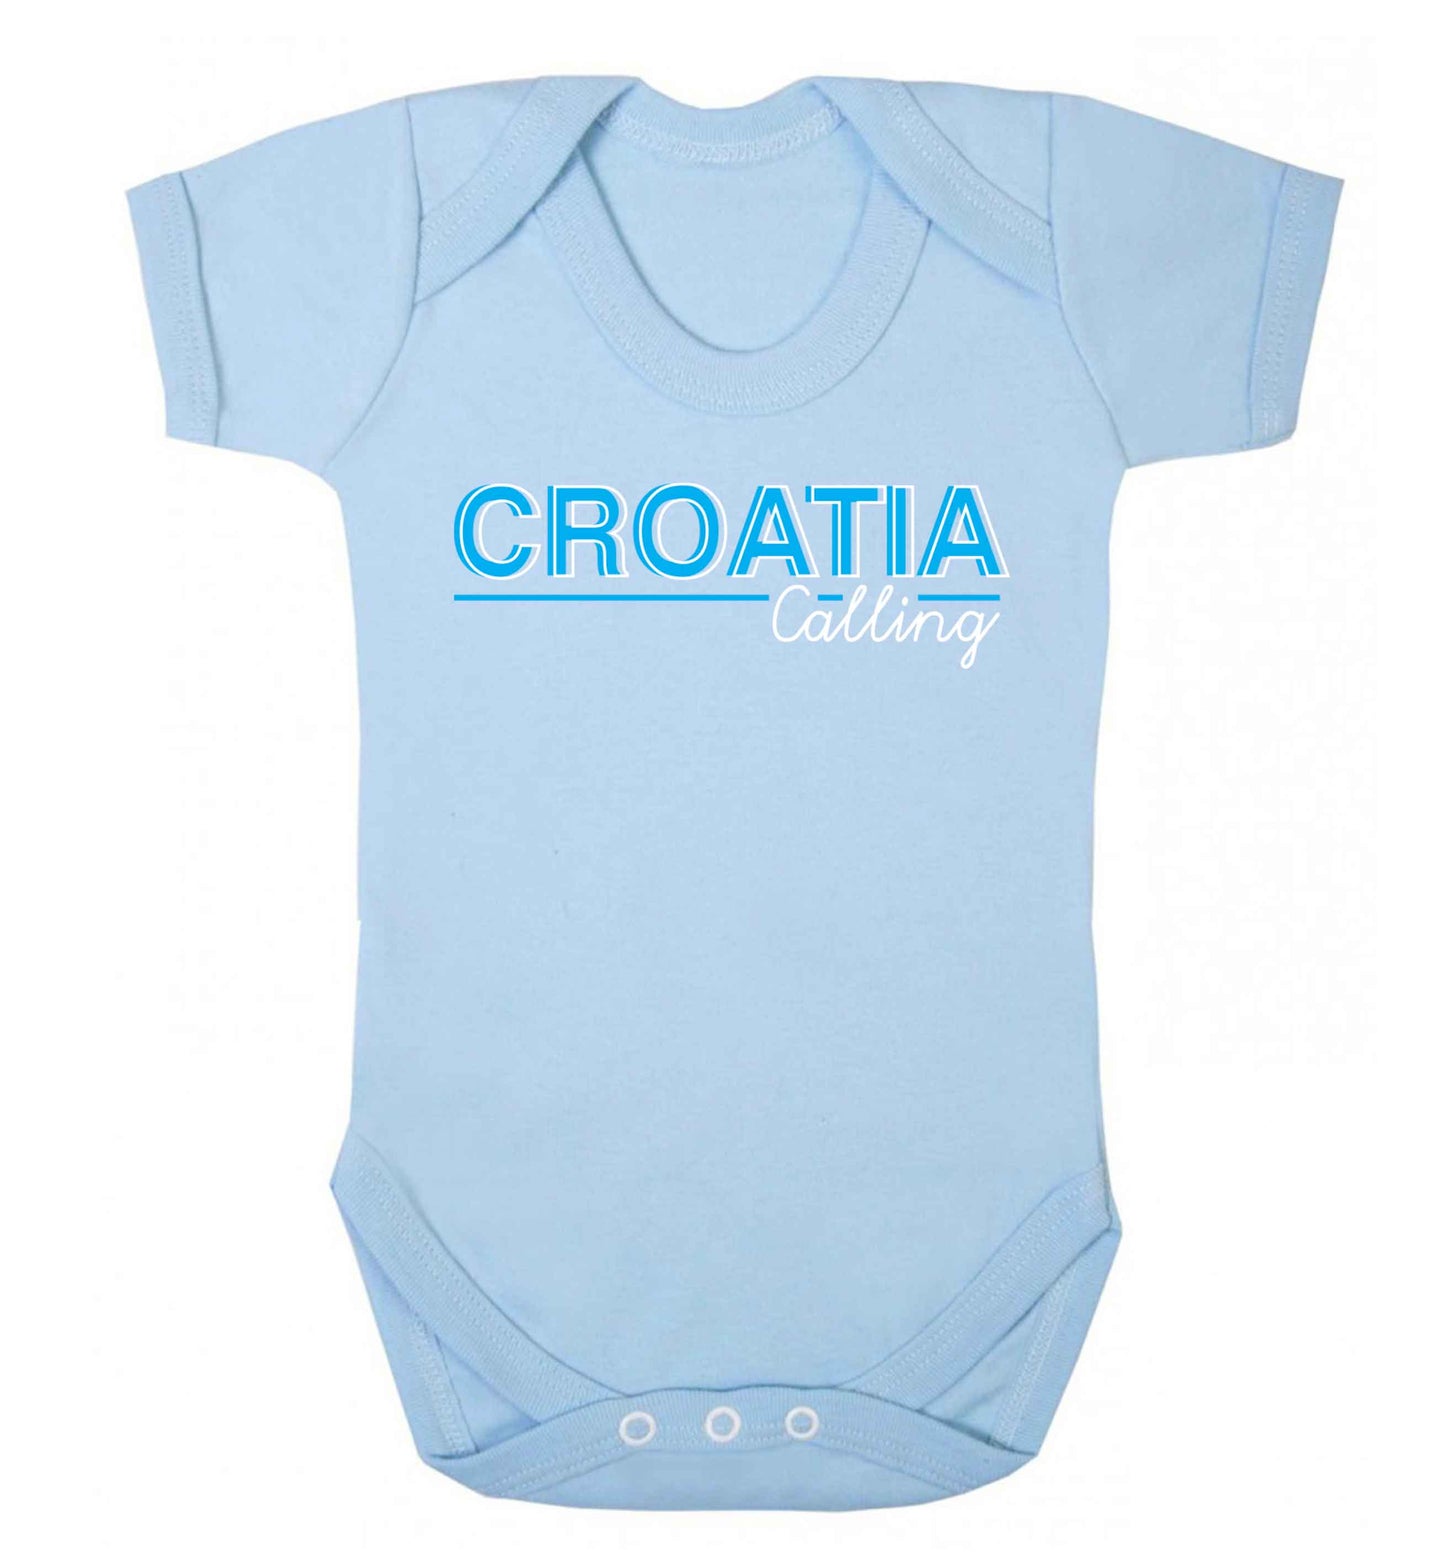 Croatia calling Baby Vest pale blue 18-24 months